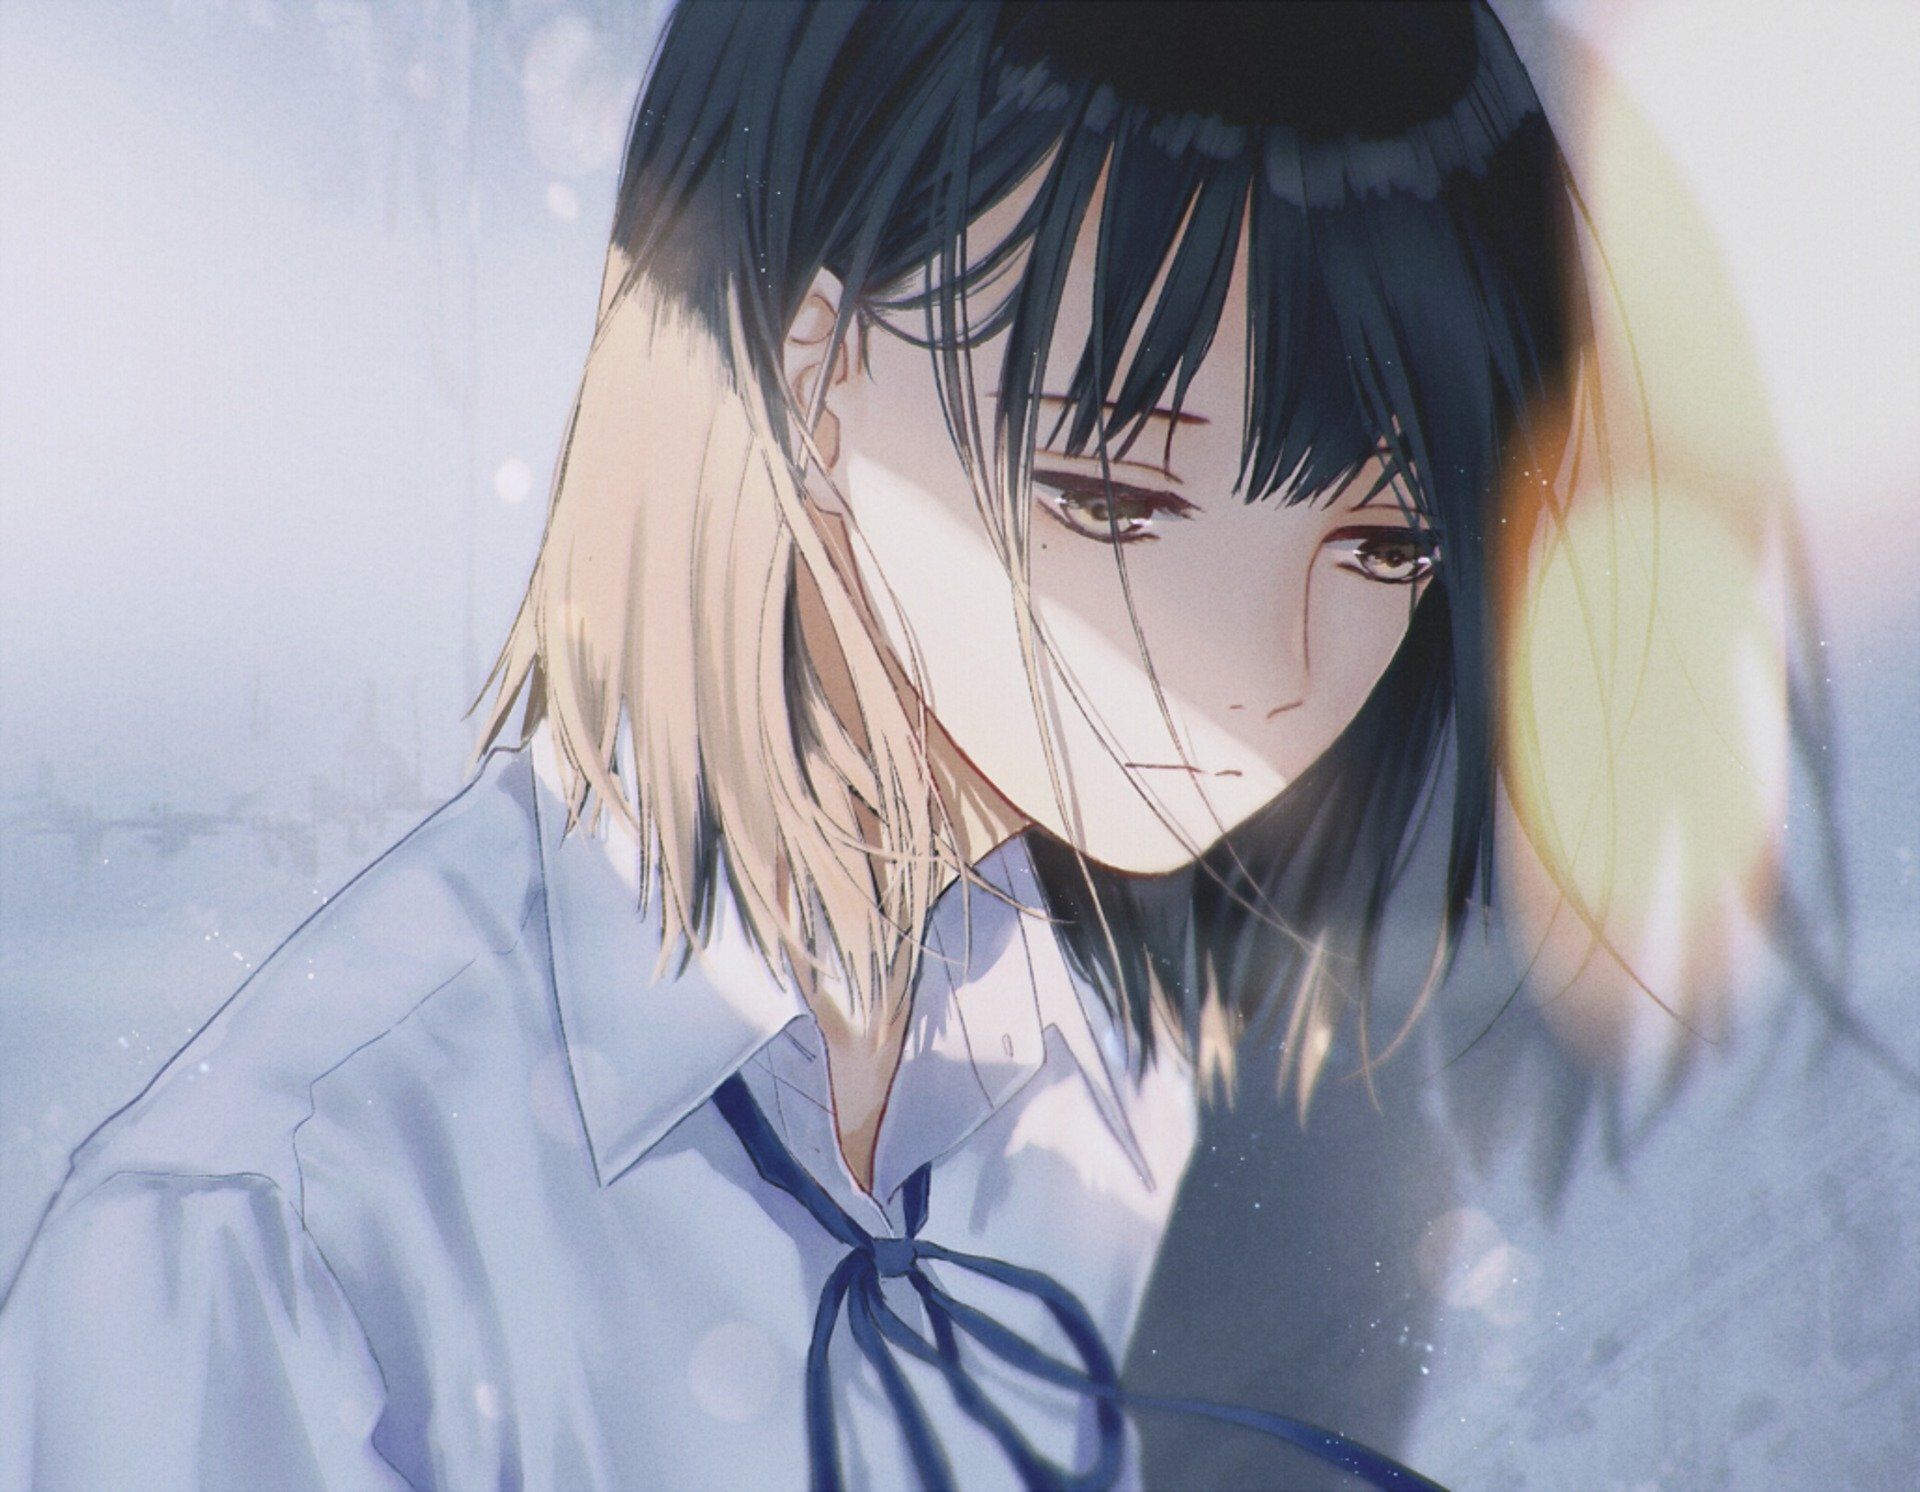 Sad Anime Girl Images